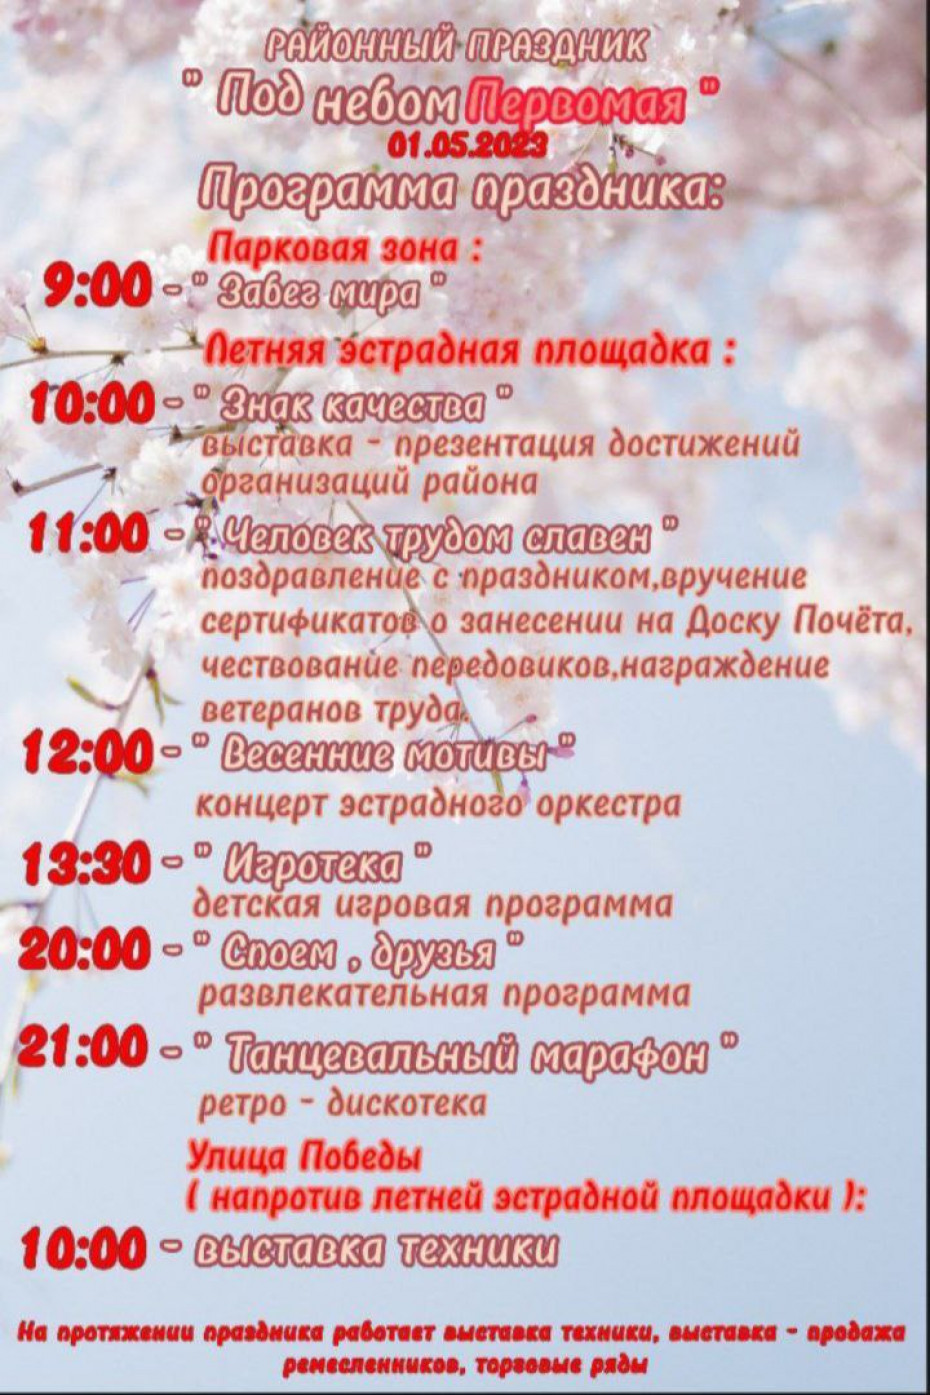 Программа праздничных мероприятий 1 мая в г.п. Зельва